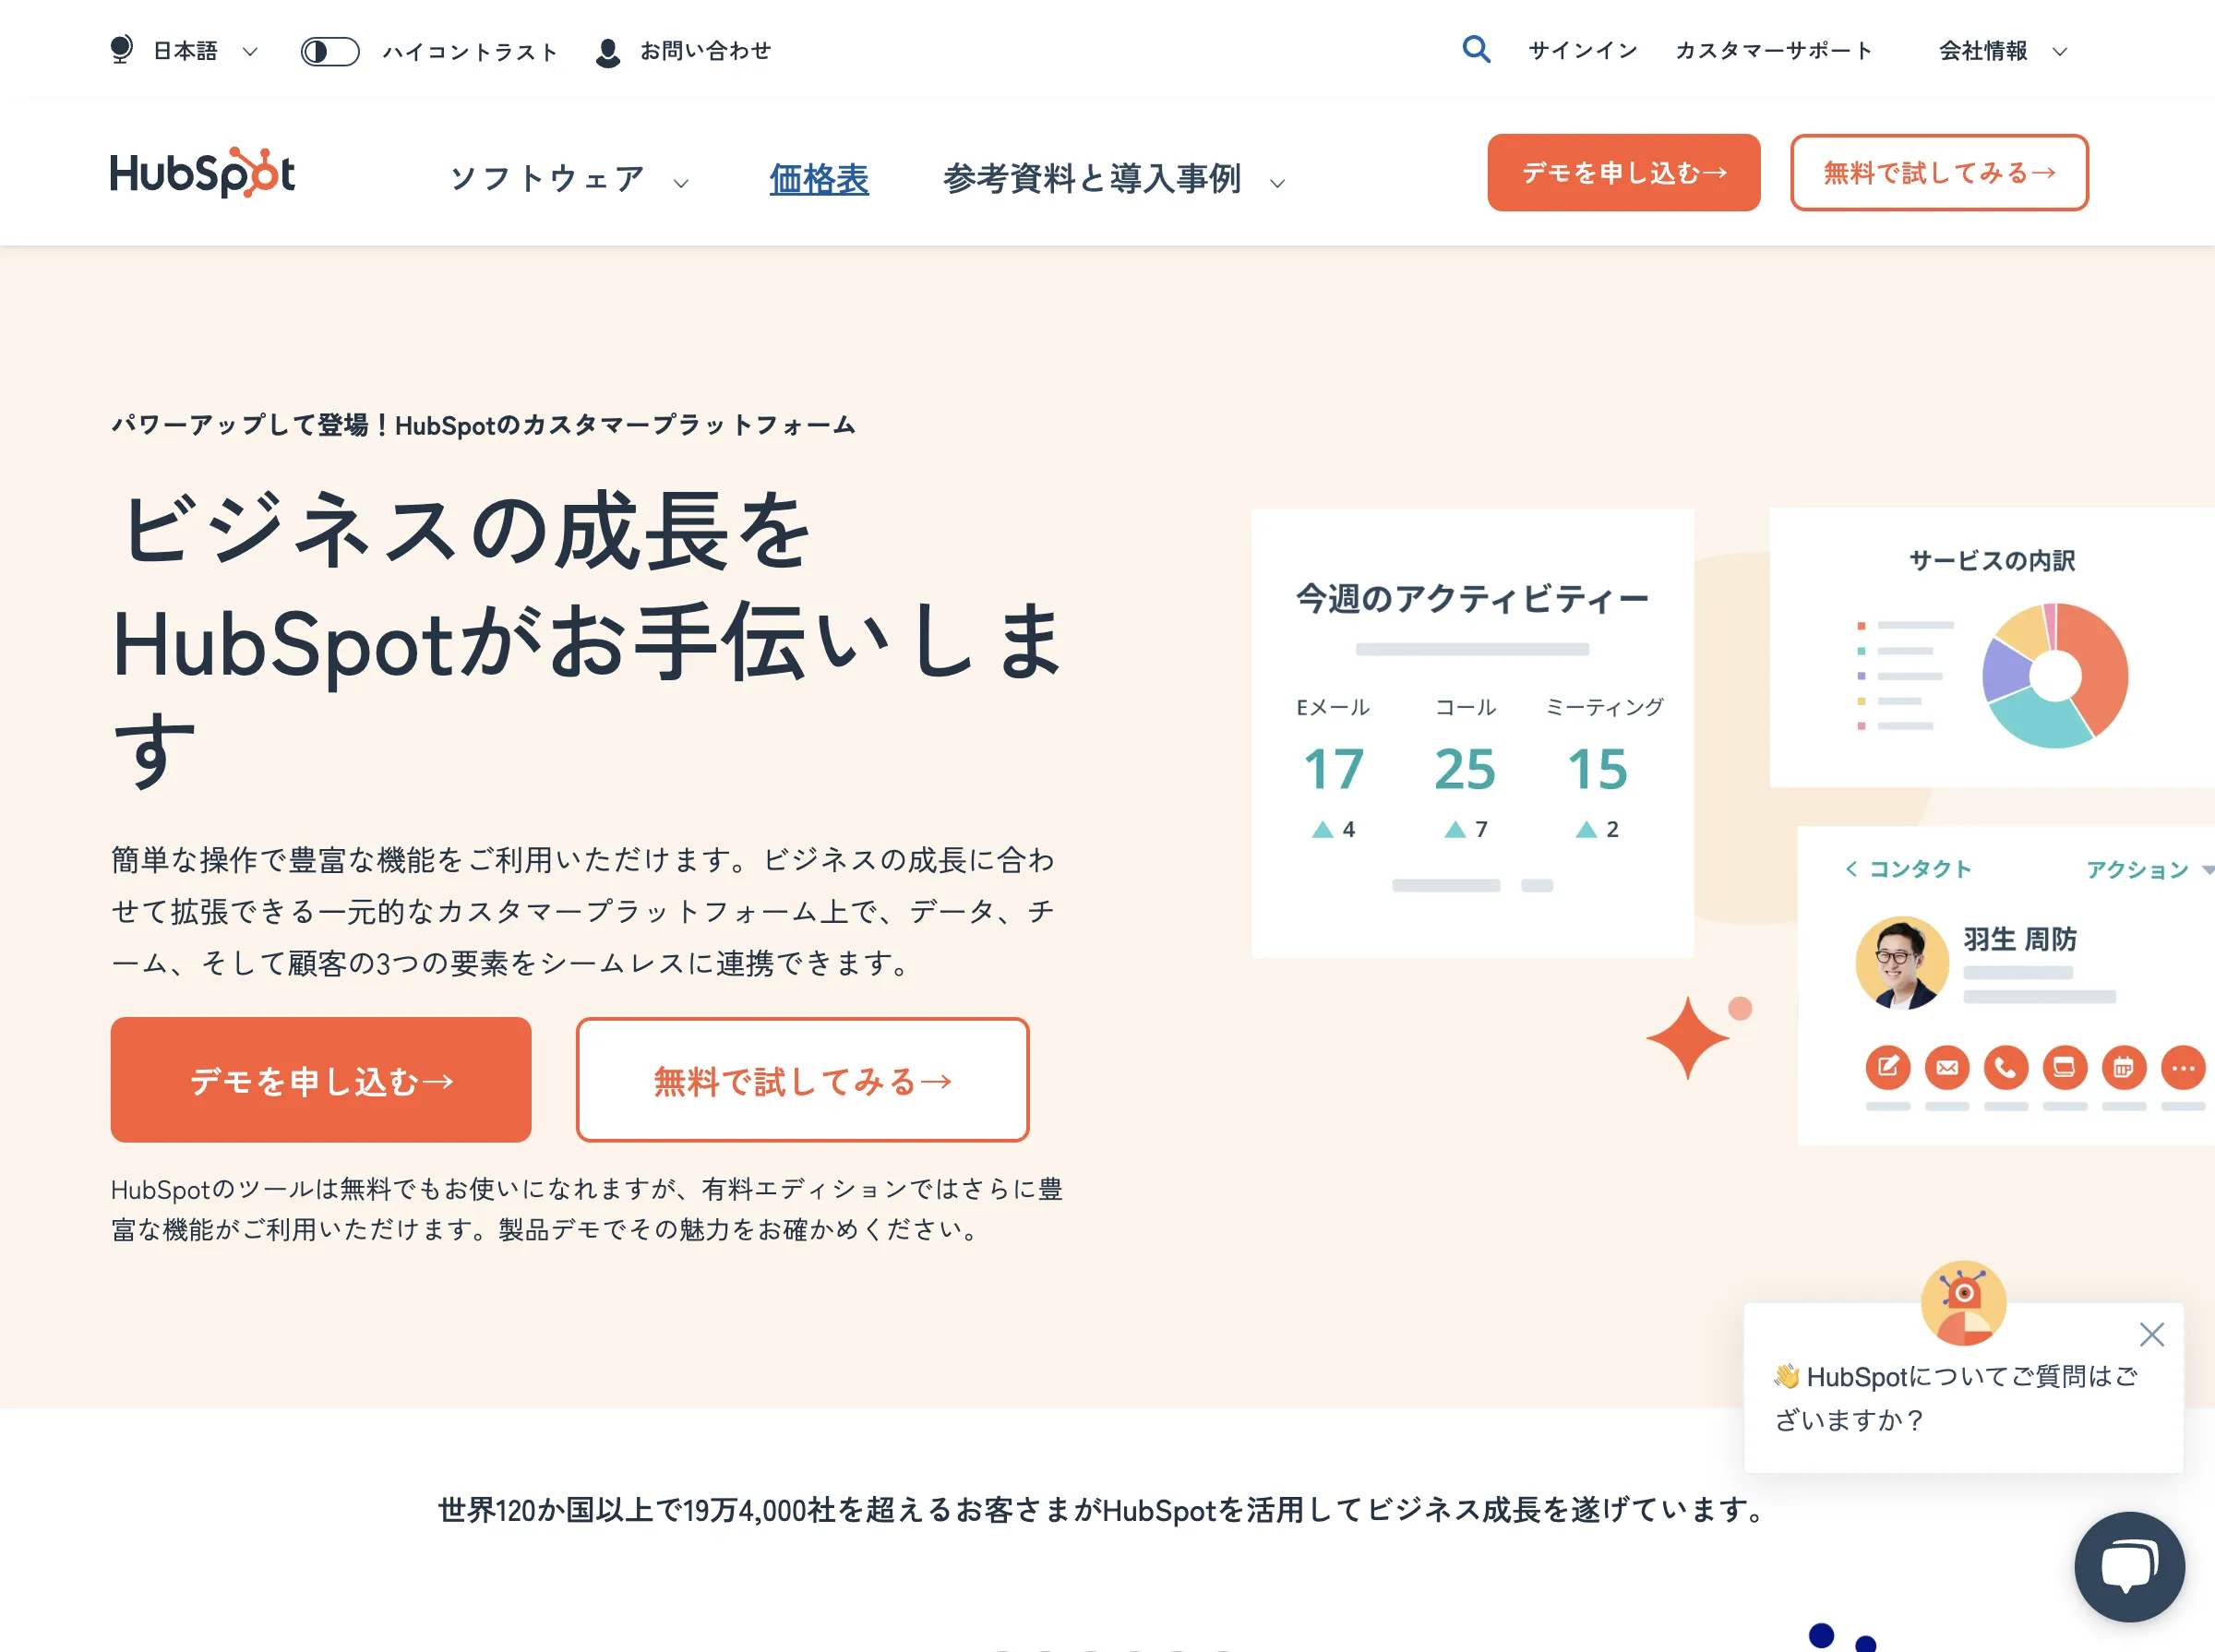 HubSpot Marketing Hub(HubSpot Japan株式会社)